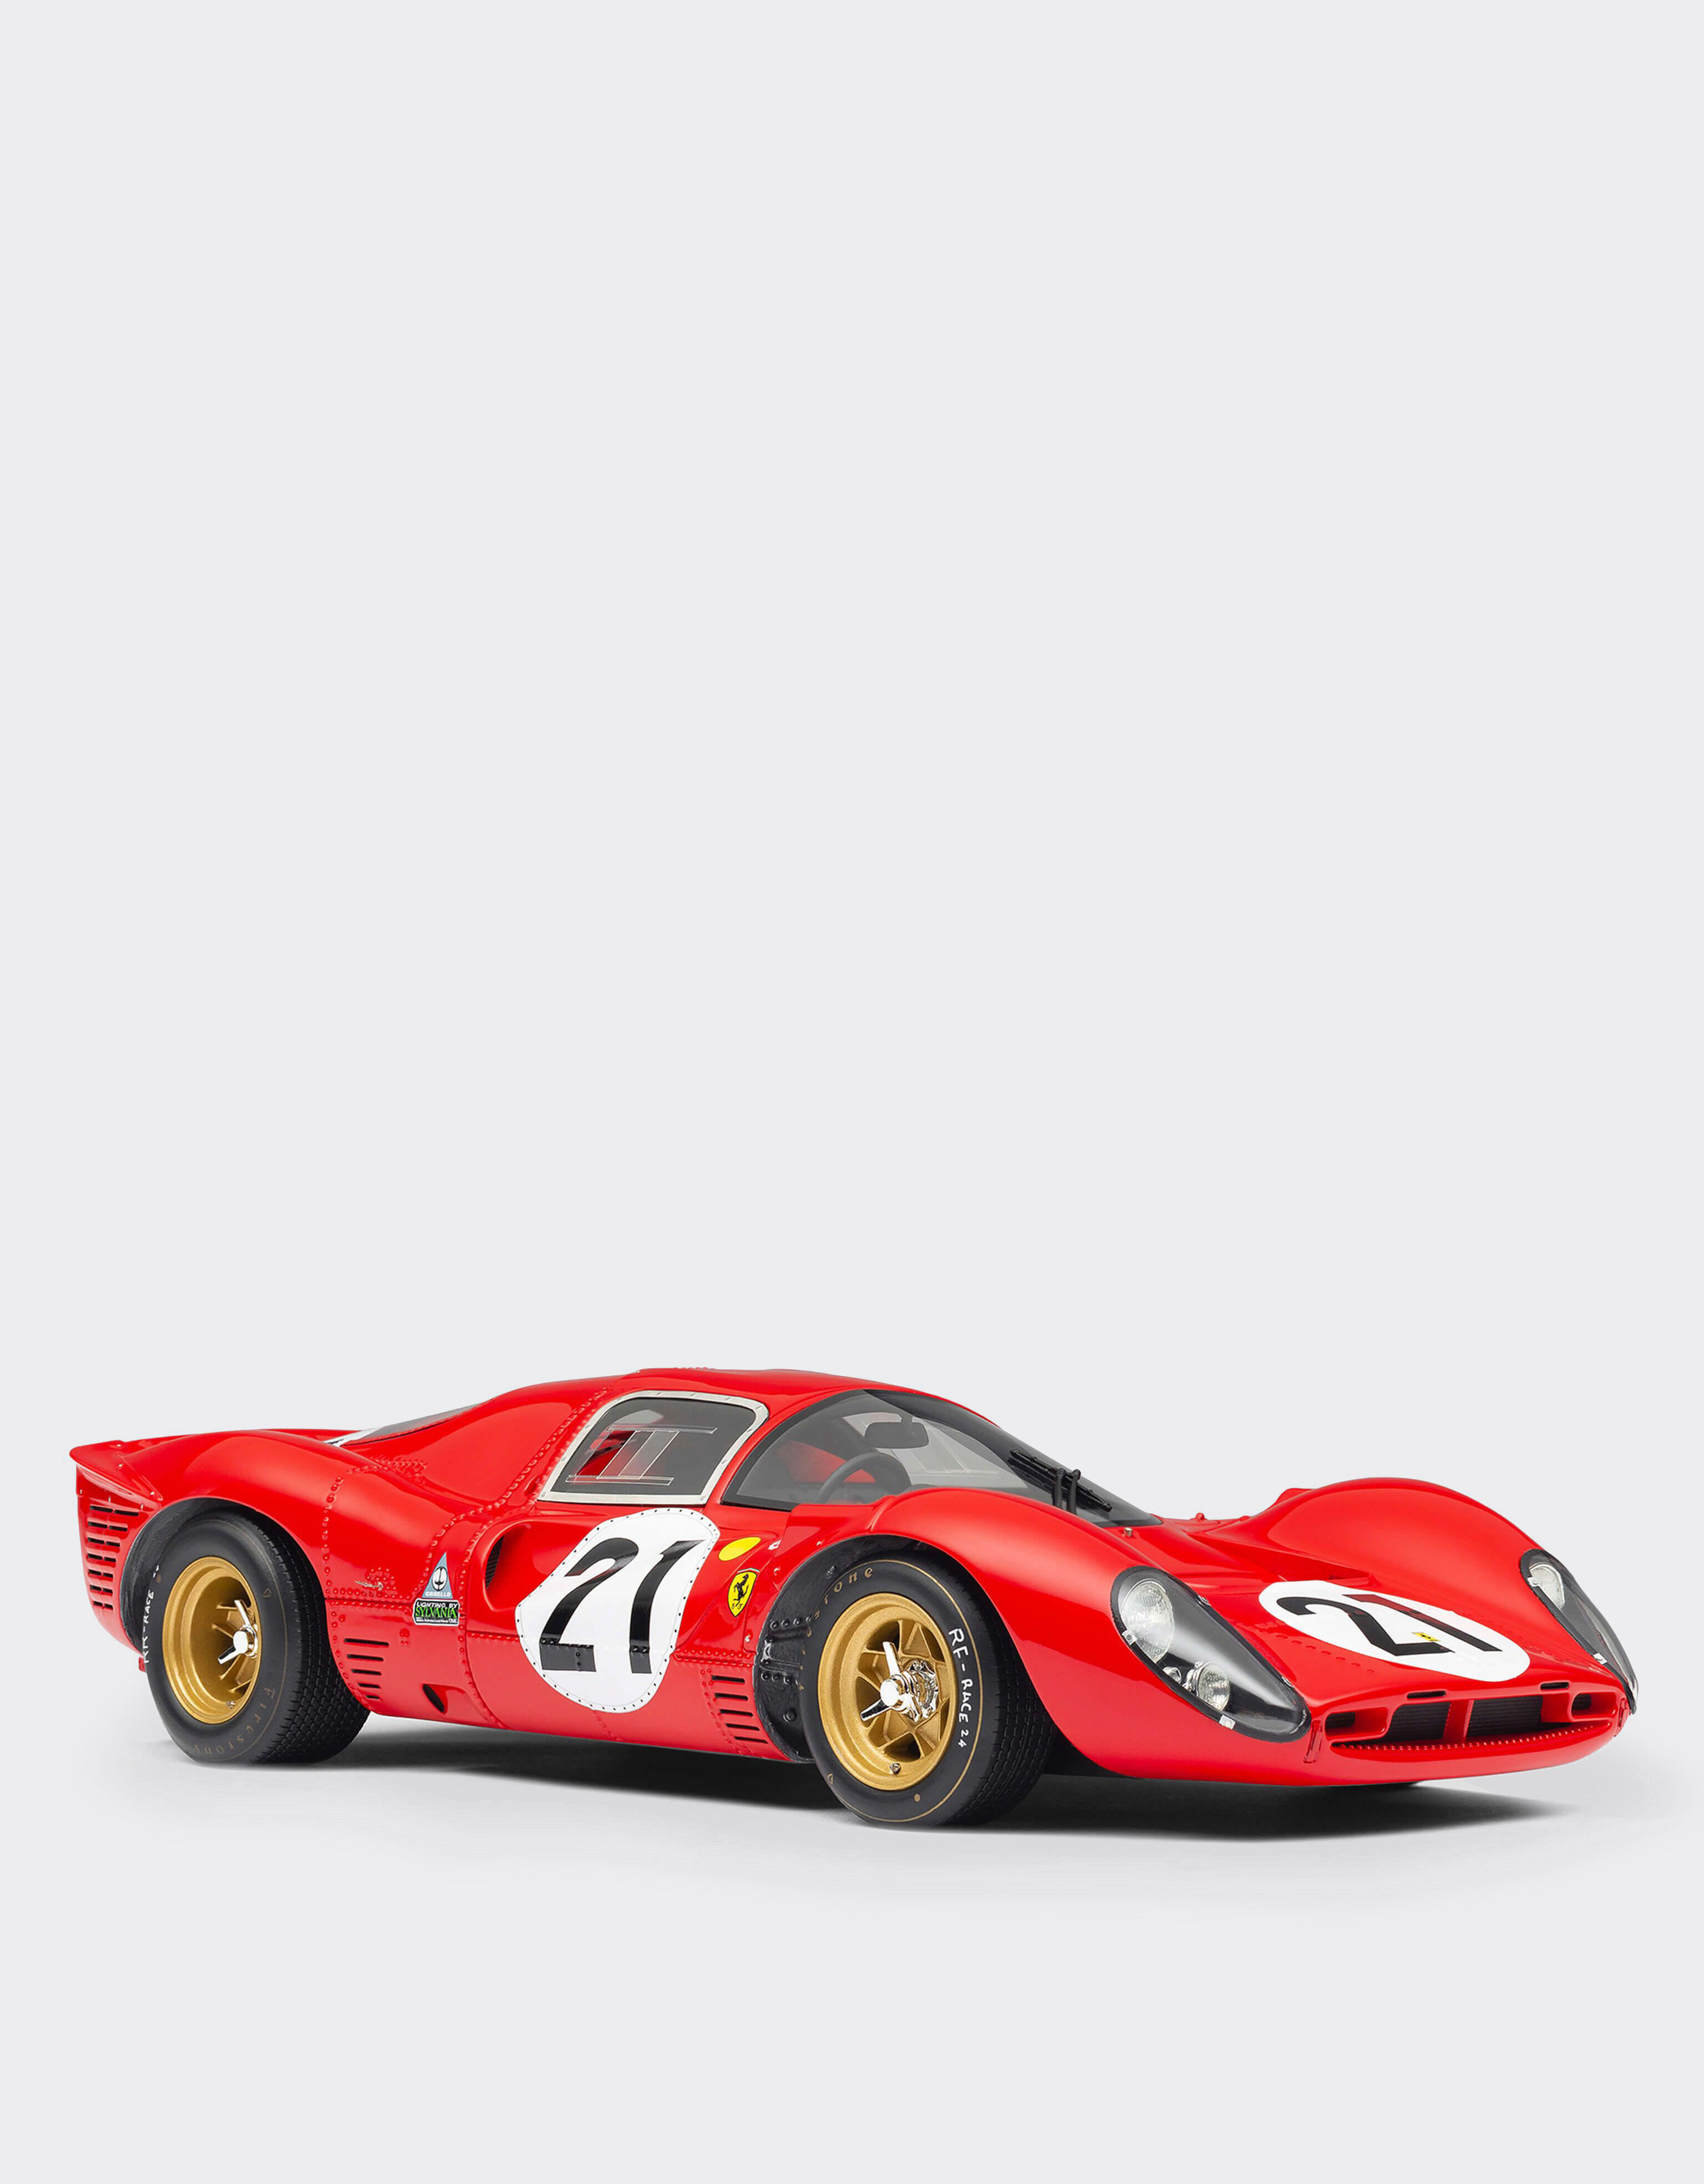 Ferrari Modellauto Ferrari 330 P4 im Maßstab 1:18 Rot L7814f